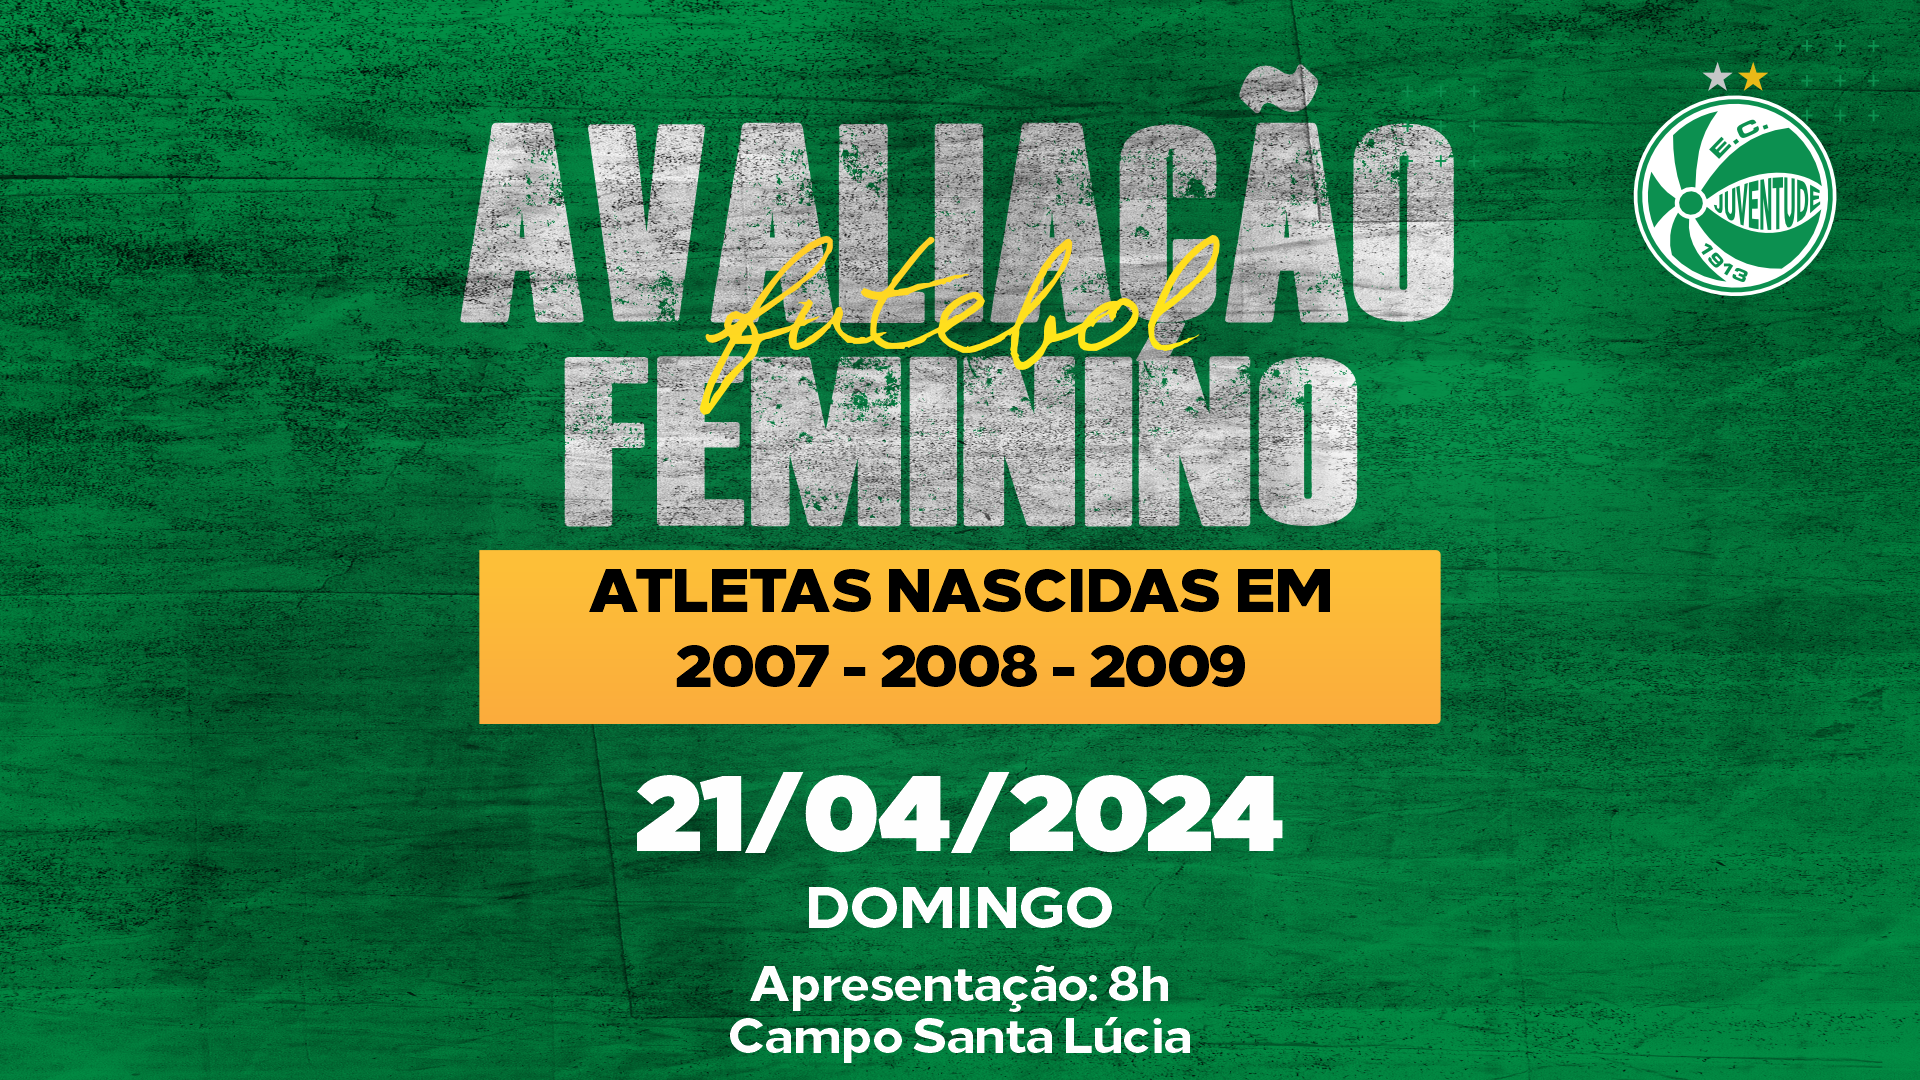 Avaliação – 1ª edição do processo seletivo para o futebol feminino 2024 – (2007 a 2009)